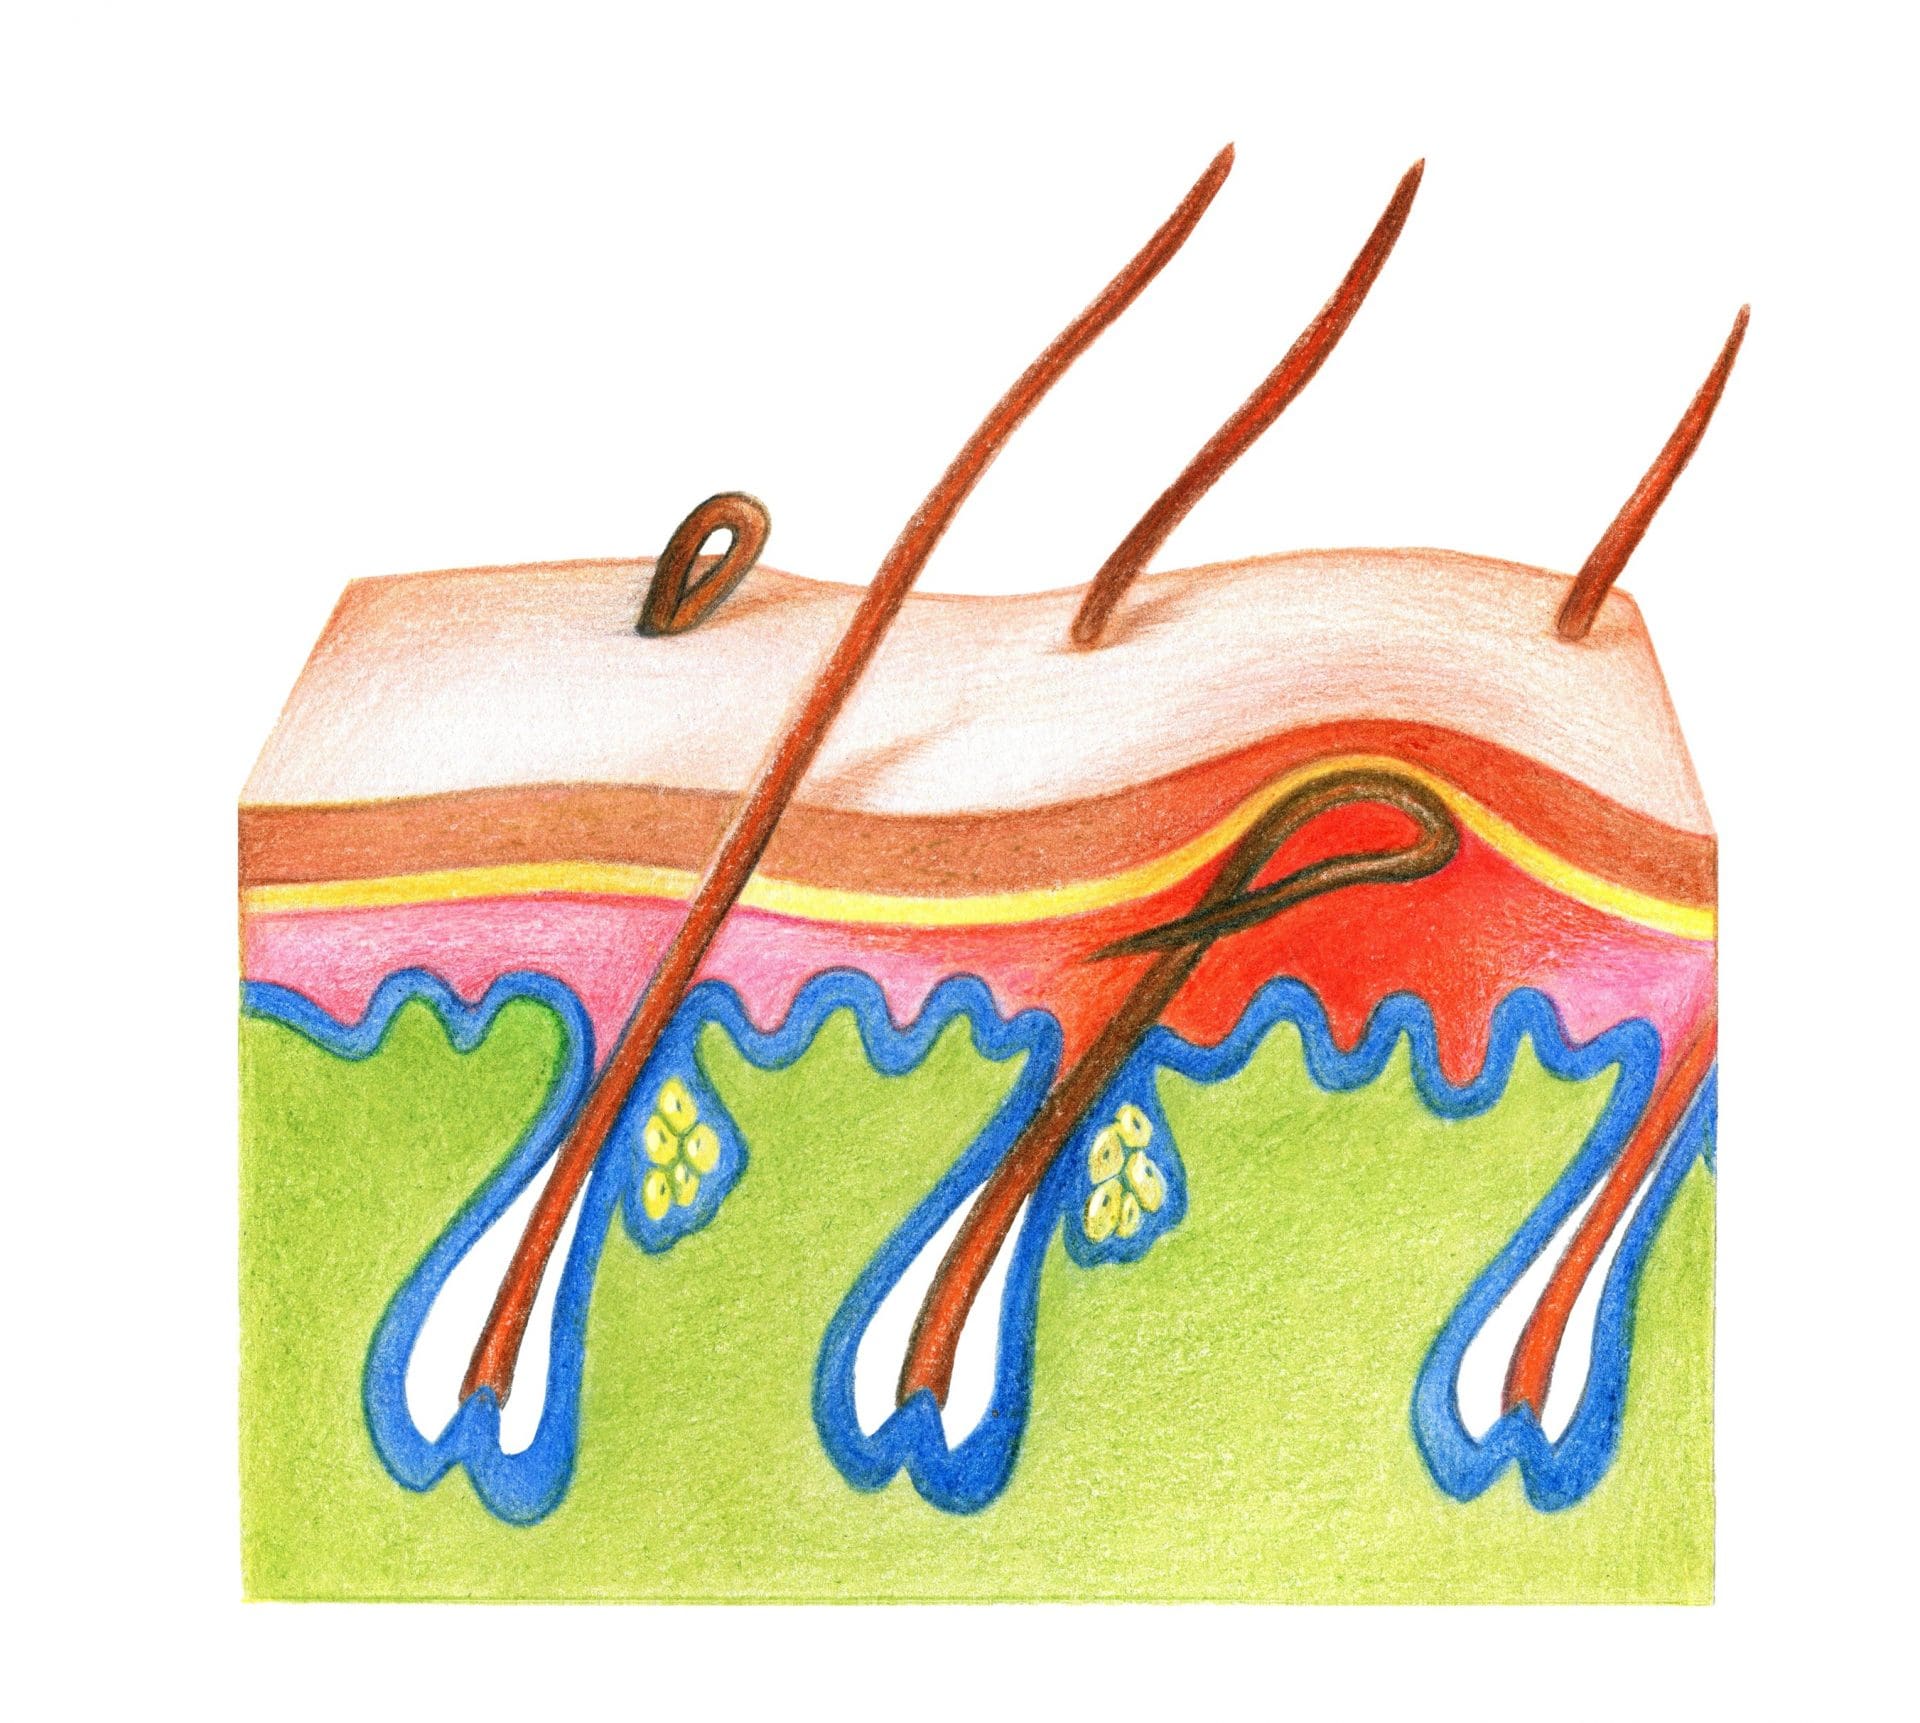 Illustration of an ingrown hair